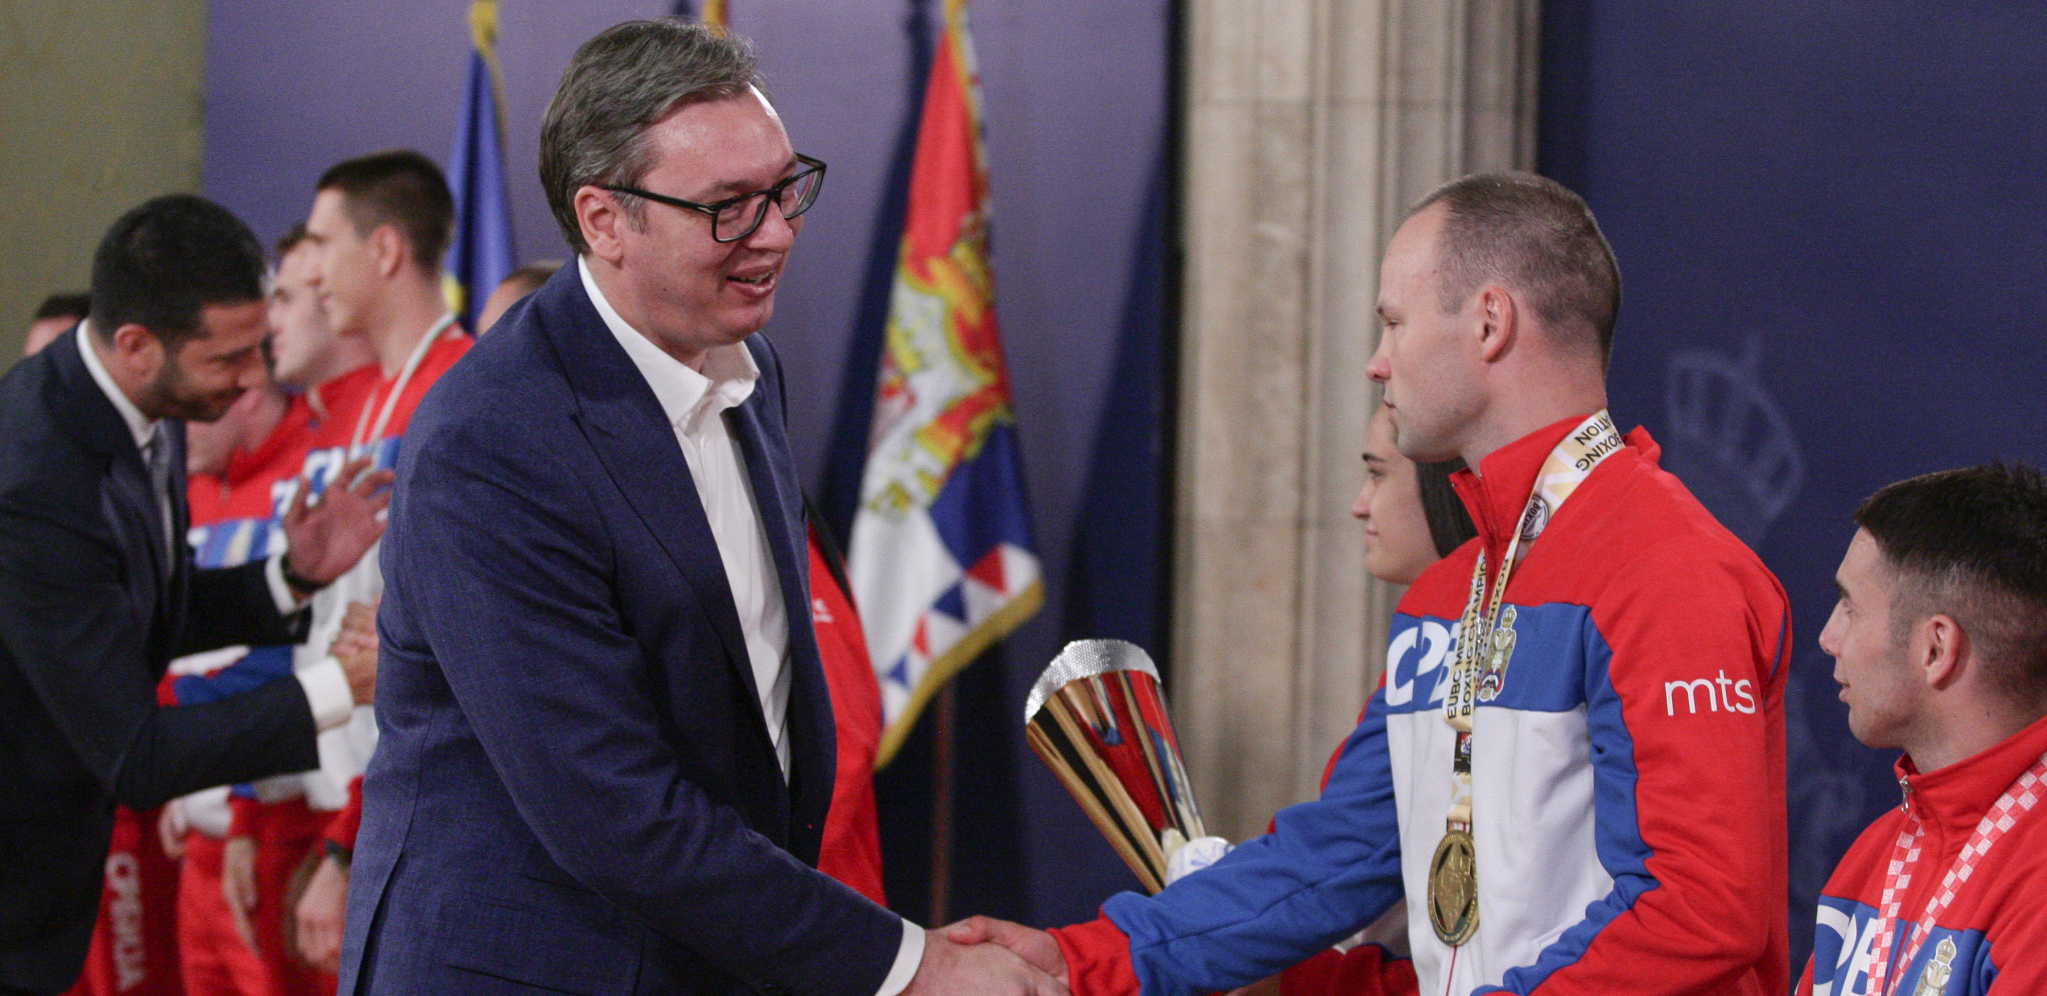 SRBIJA PONOVO POSTAJE BOKSERSKA SILA Predsednik Vučić ugostio naše zlatne momke: Srpski boks se na velika vrata vraća u Evropu i svet (FOTO)